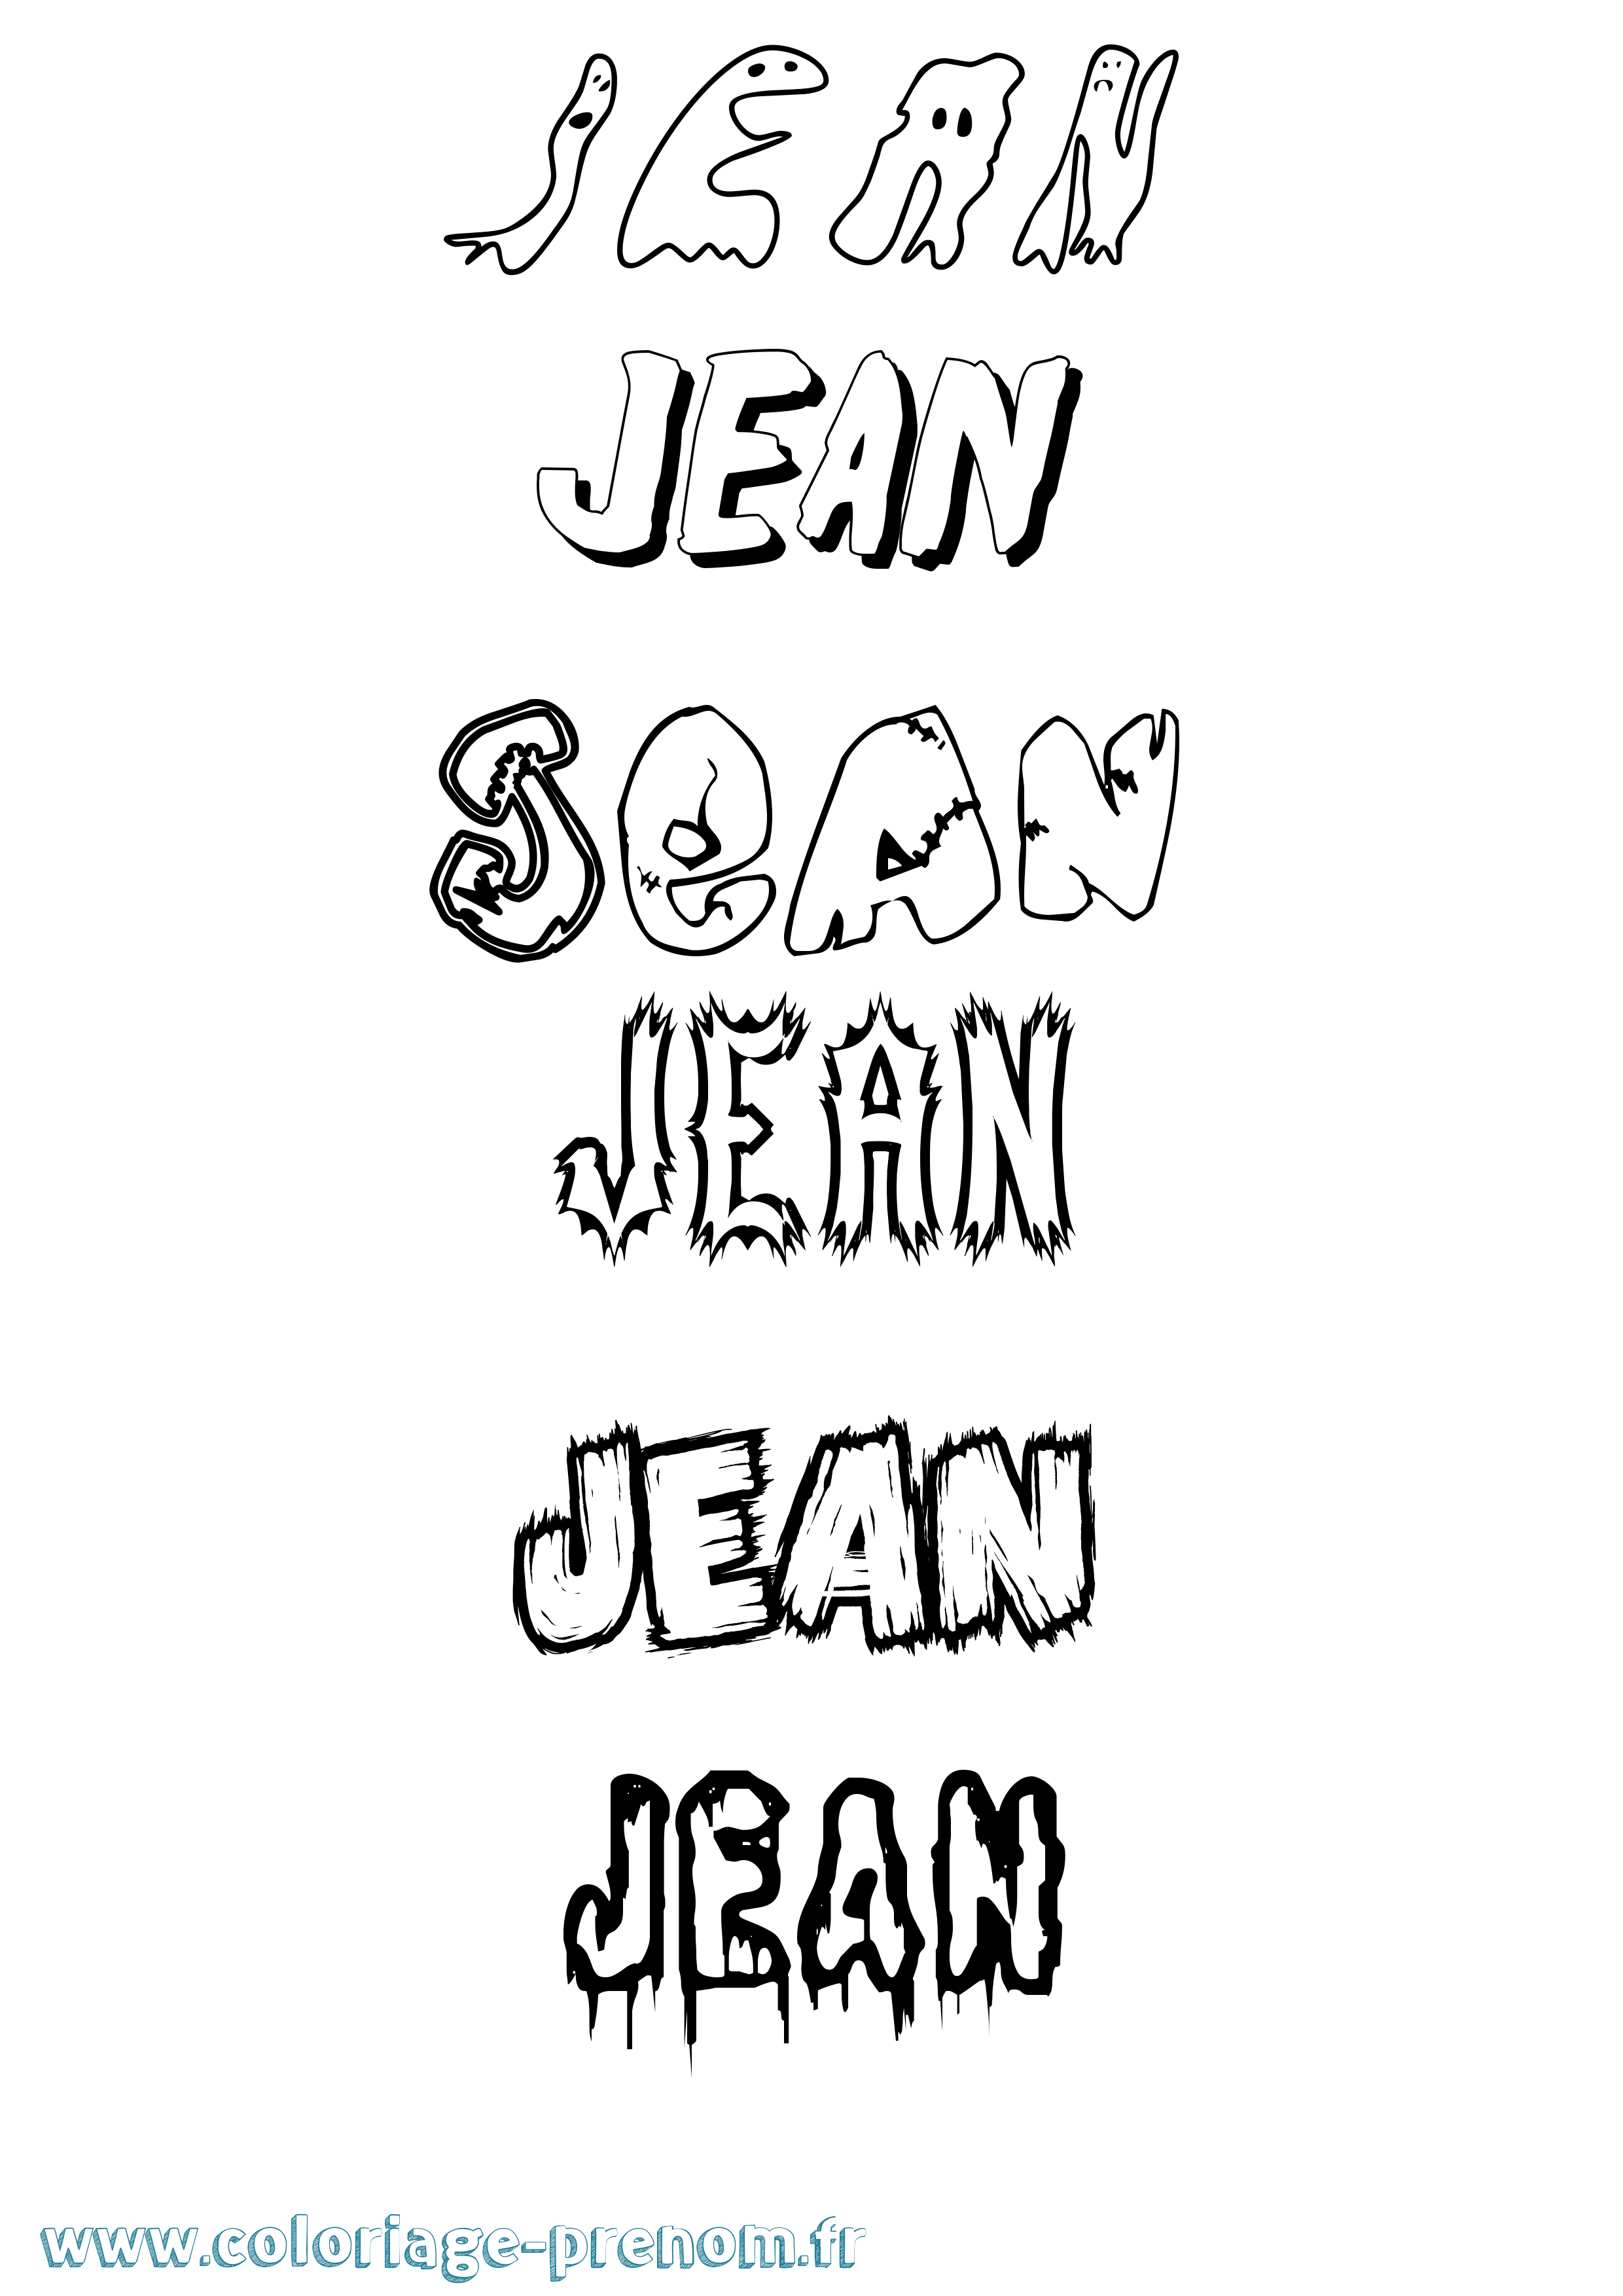 Coloriage prénom Jean